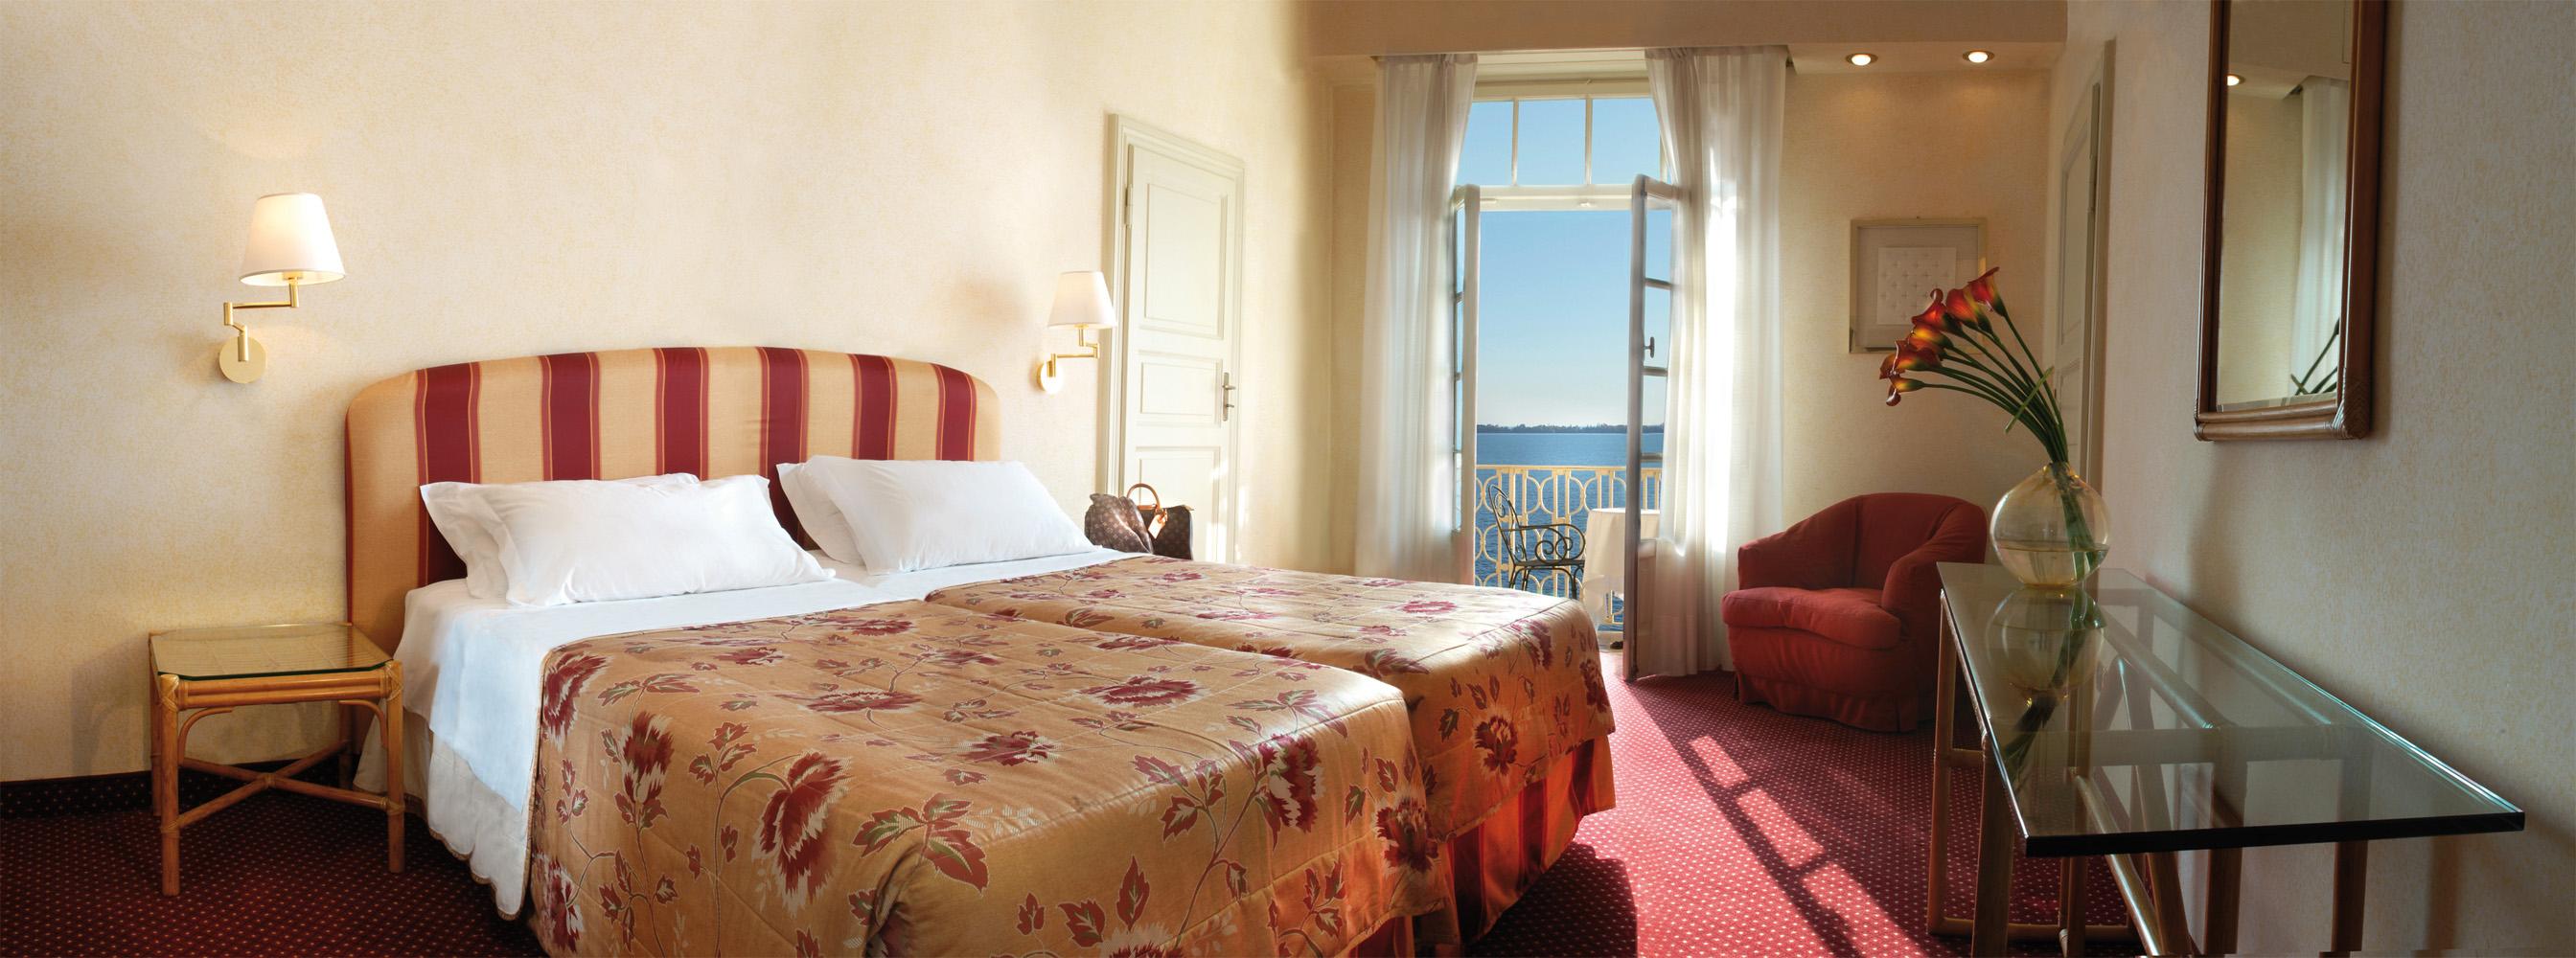 Grand Hotel Gardone Gardone Riviera Esterno foto